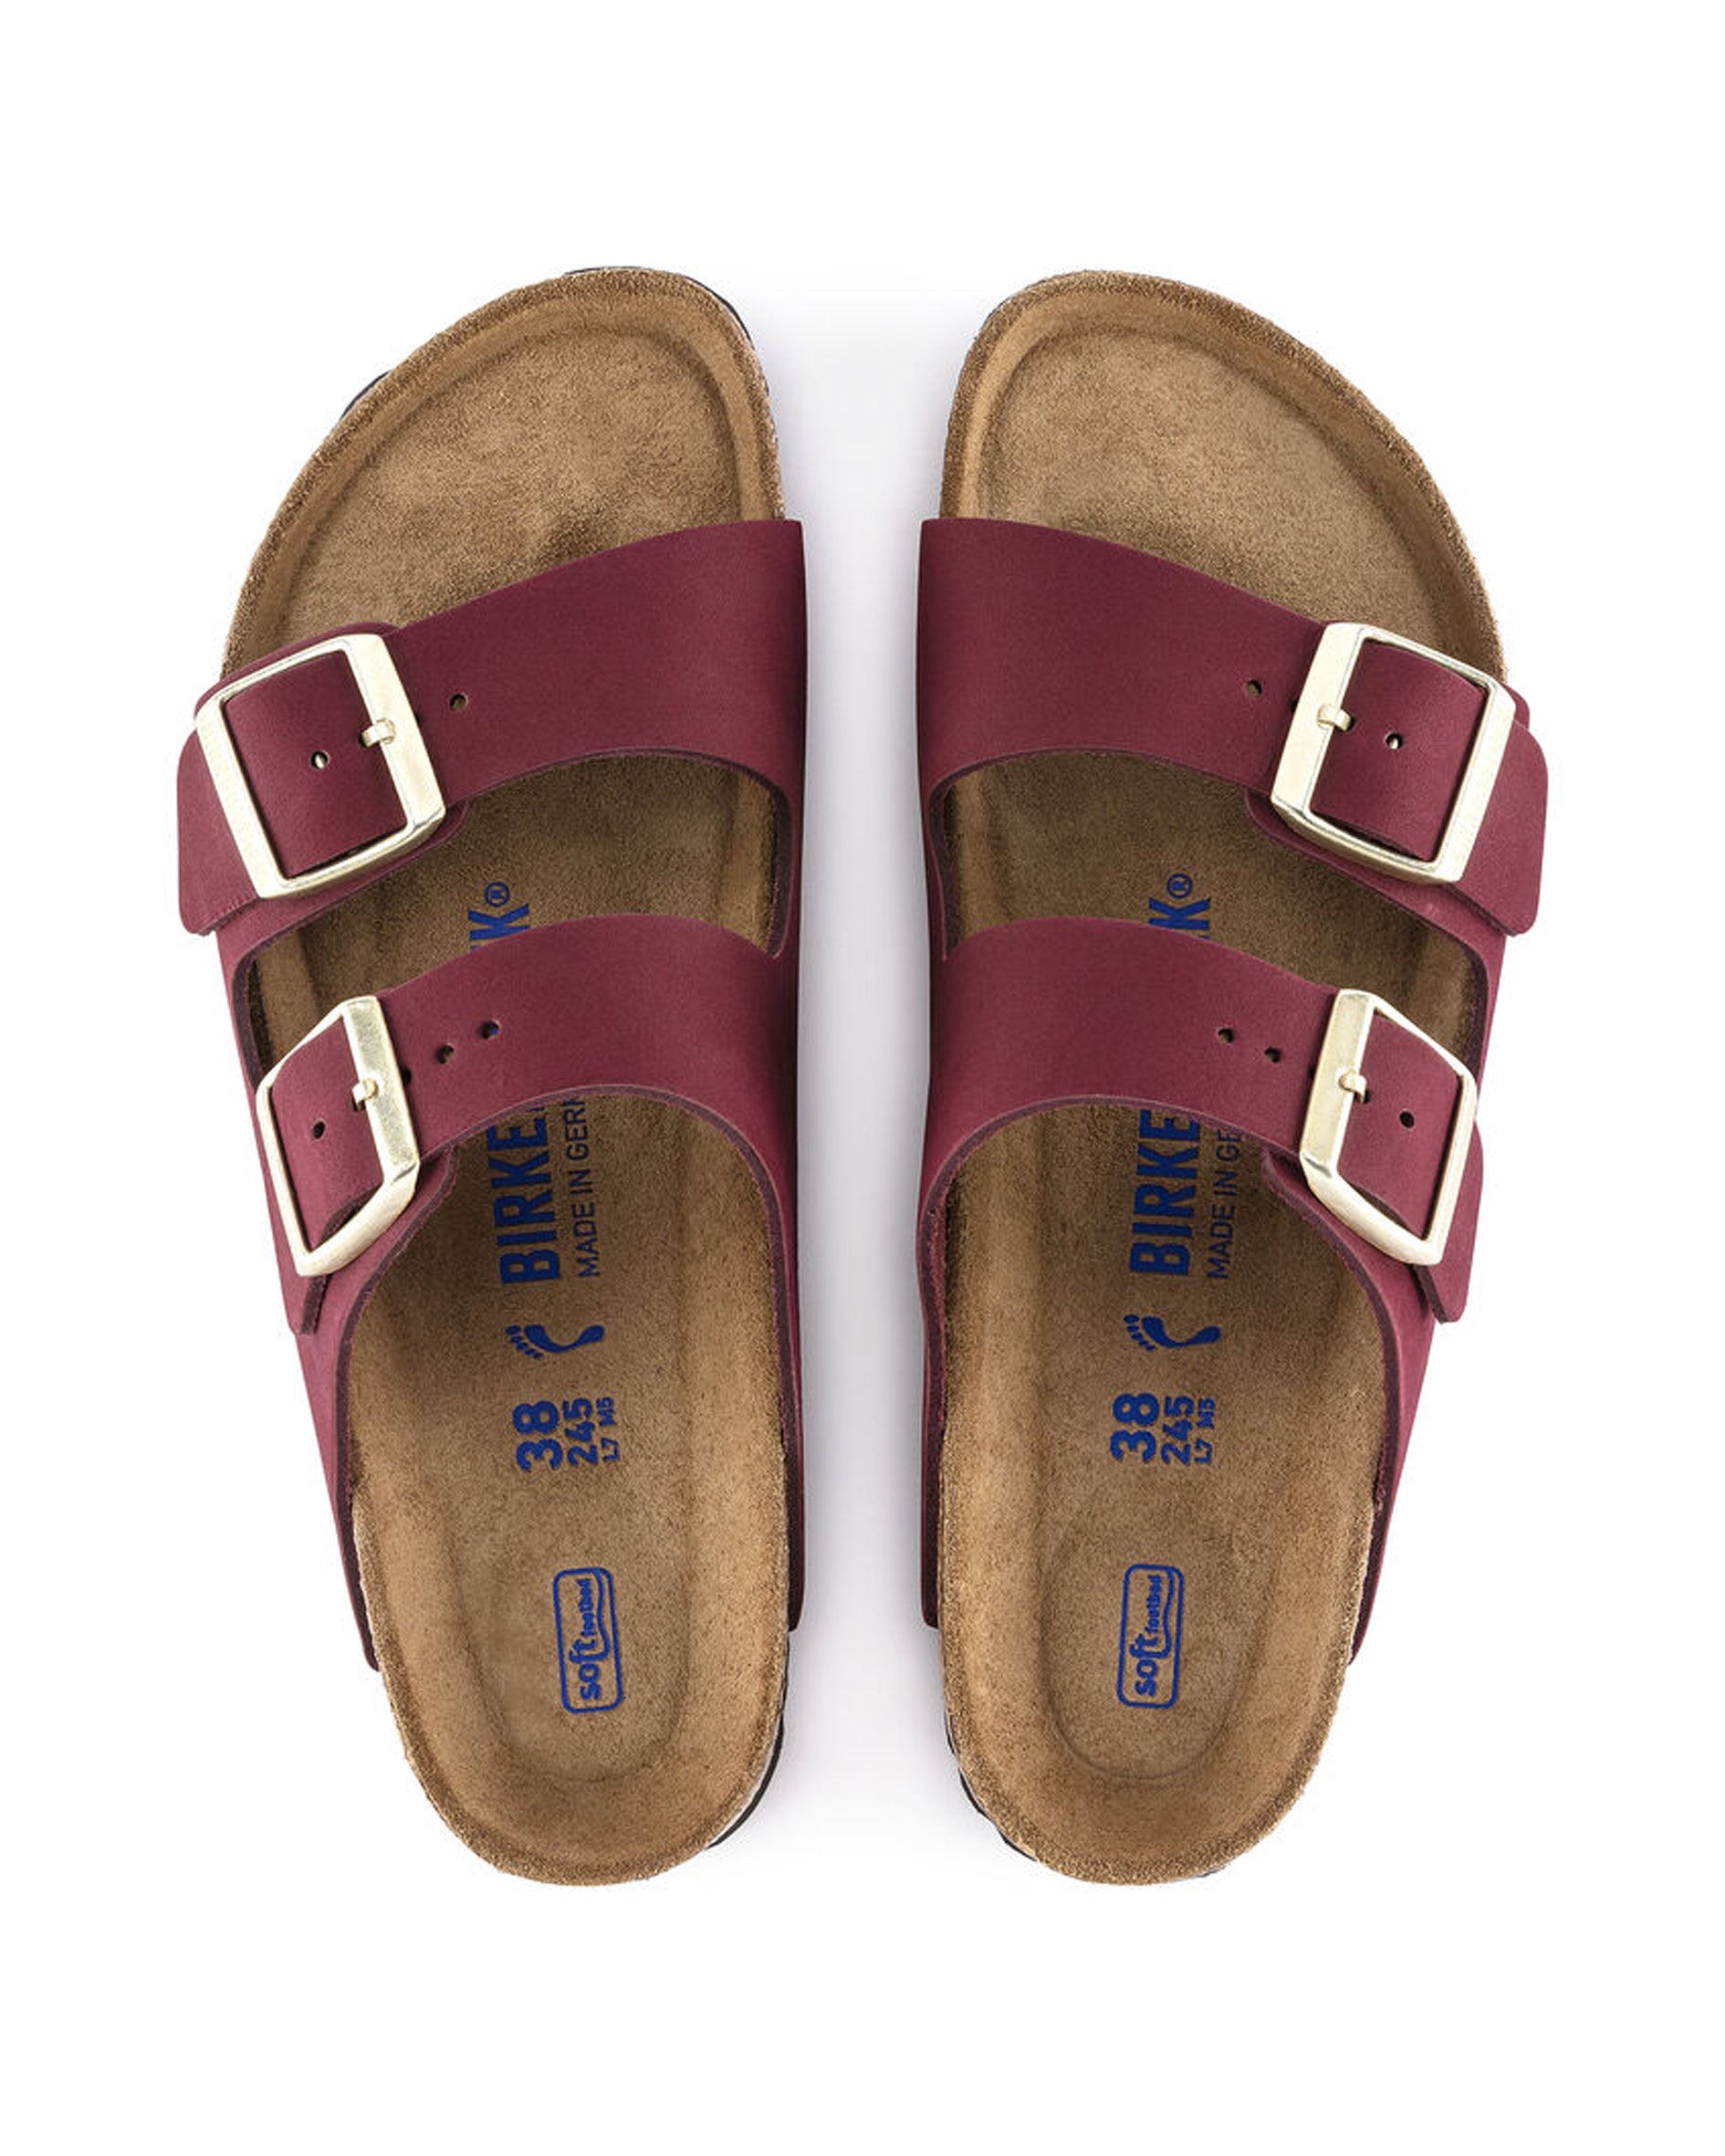 Arizona Soft Footbed Maroon Nubuck Leather Sandals